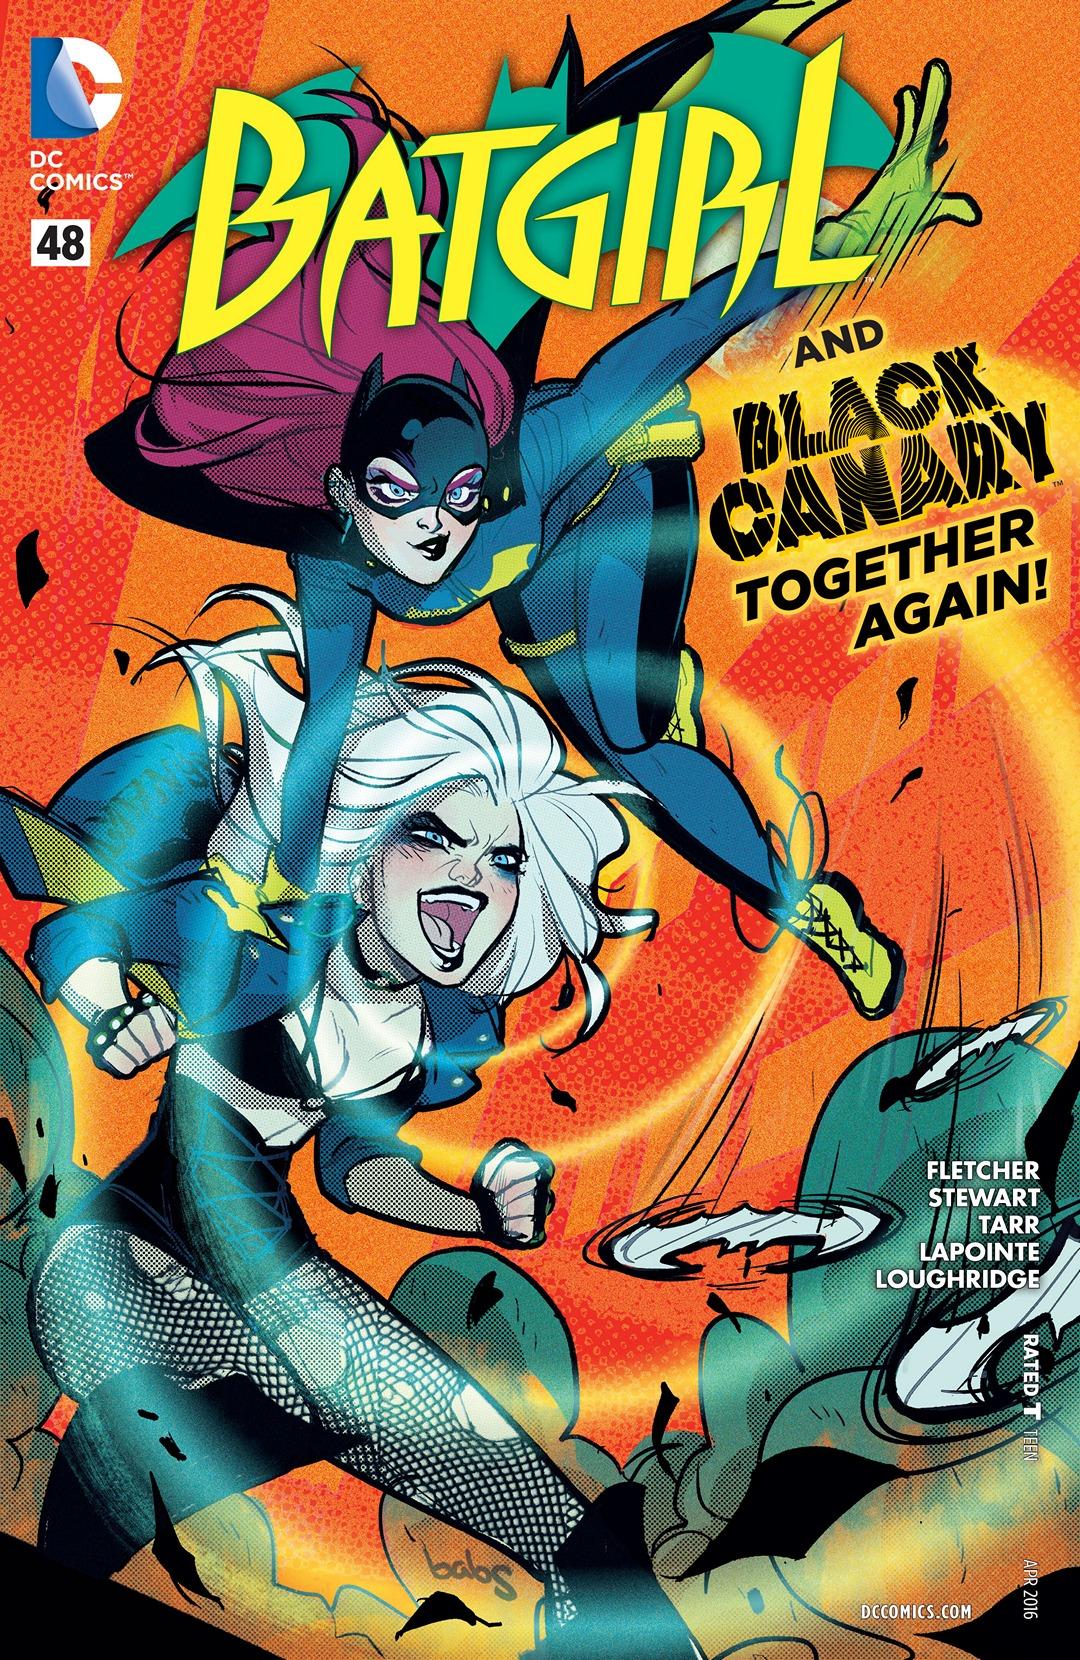 Batgirl Vol. 4 #48